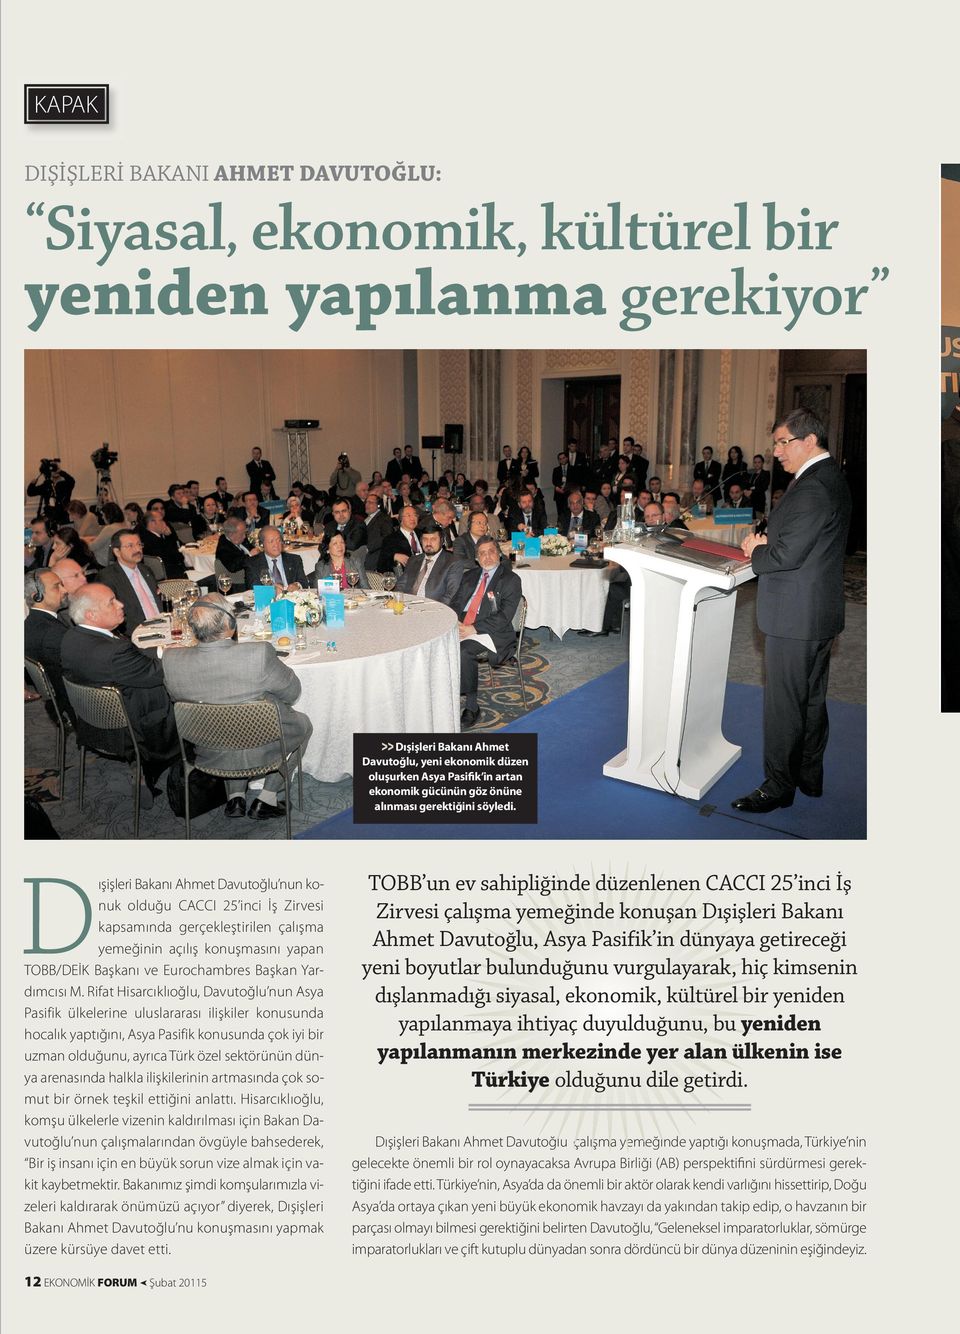 D ışişleri Bakanı Ahmet Davutoğlu nun konuk olduğu CACCI 25 inci İş Zirvesi kapsamında gerçekleştirilen çalışma yemeğinin açılış konuşmasını yapan TOBB/DEİK Başkanı ve Eurochambres Başkan Yardımcısı